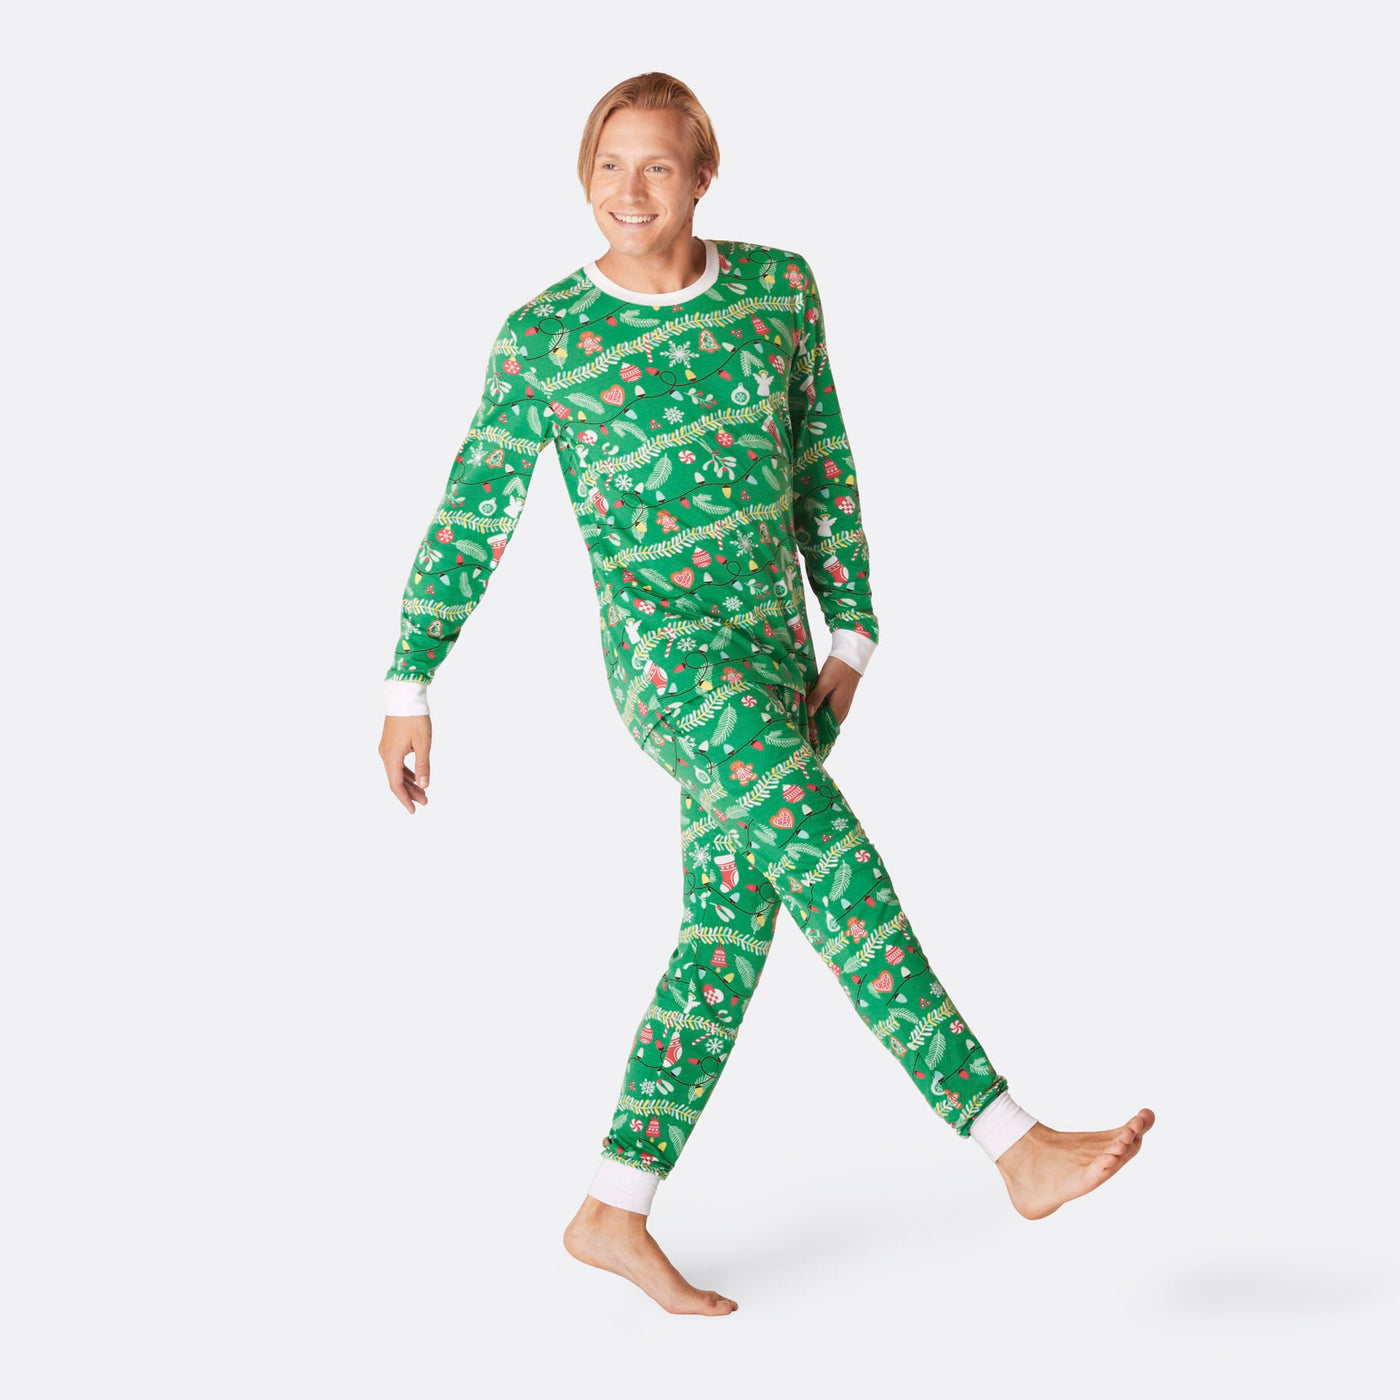 Men's Christmas Tree Christmas Pyjamas